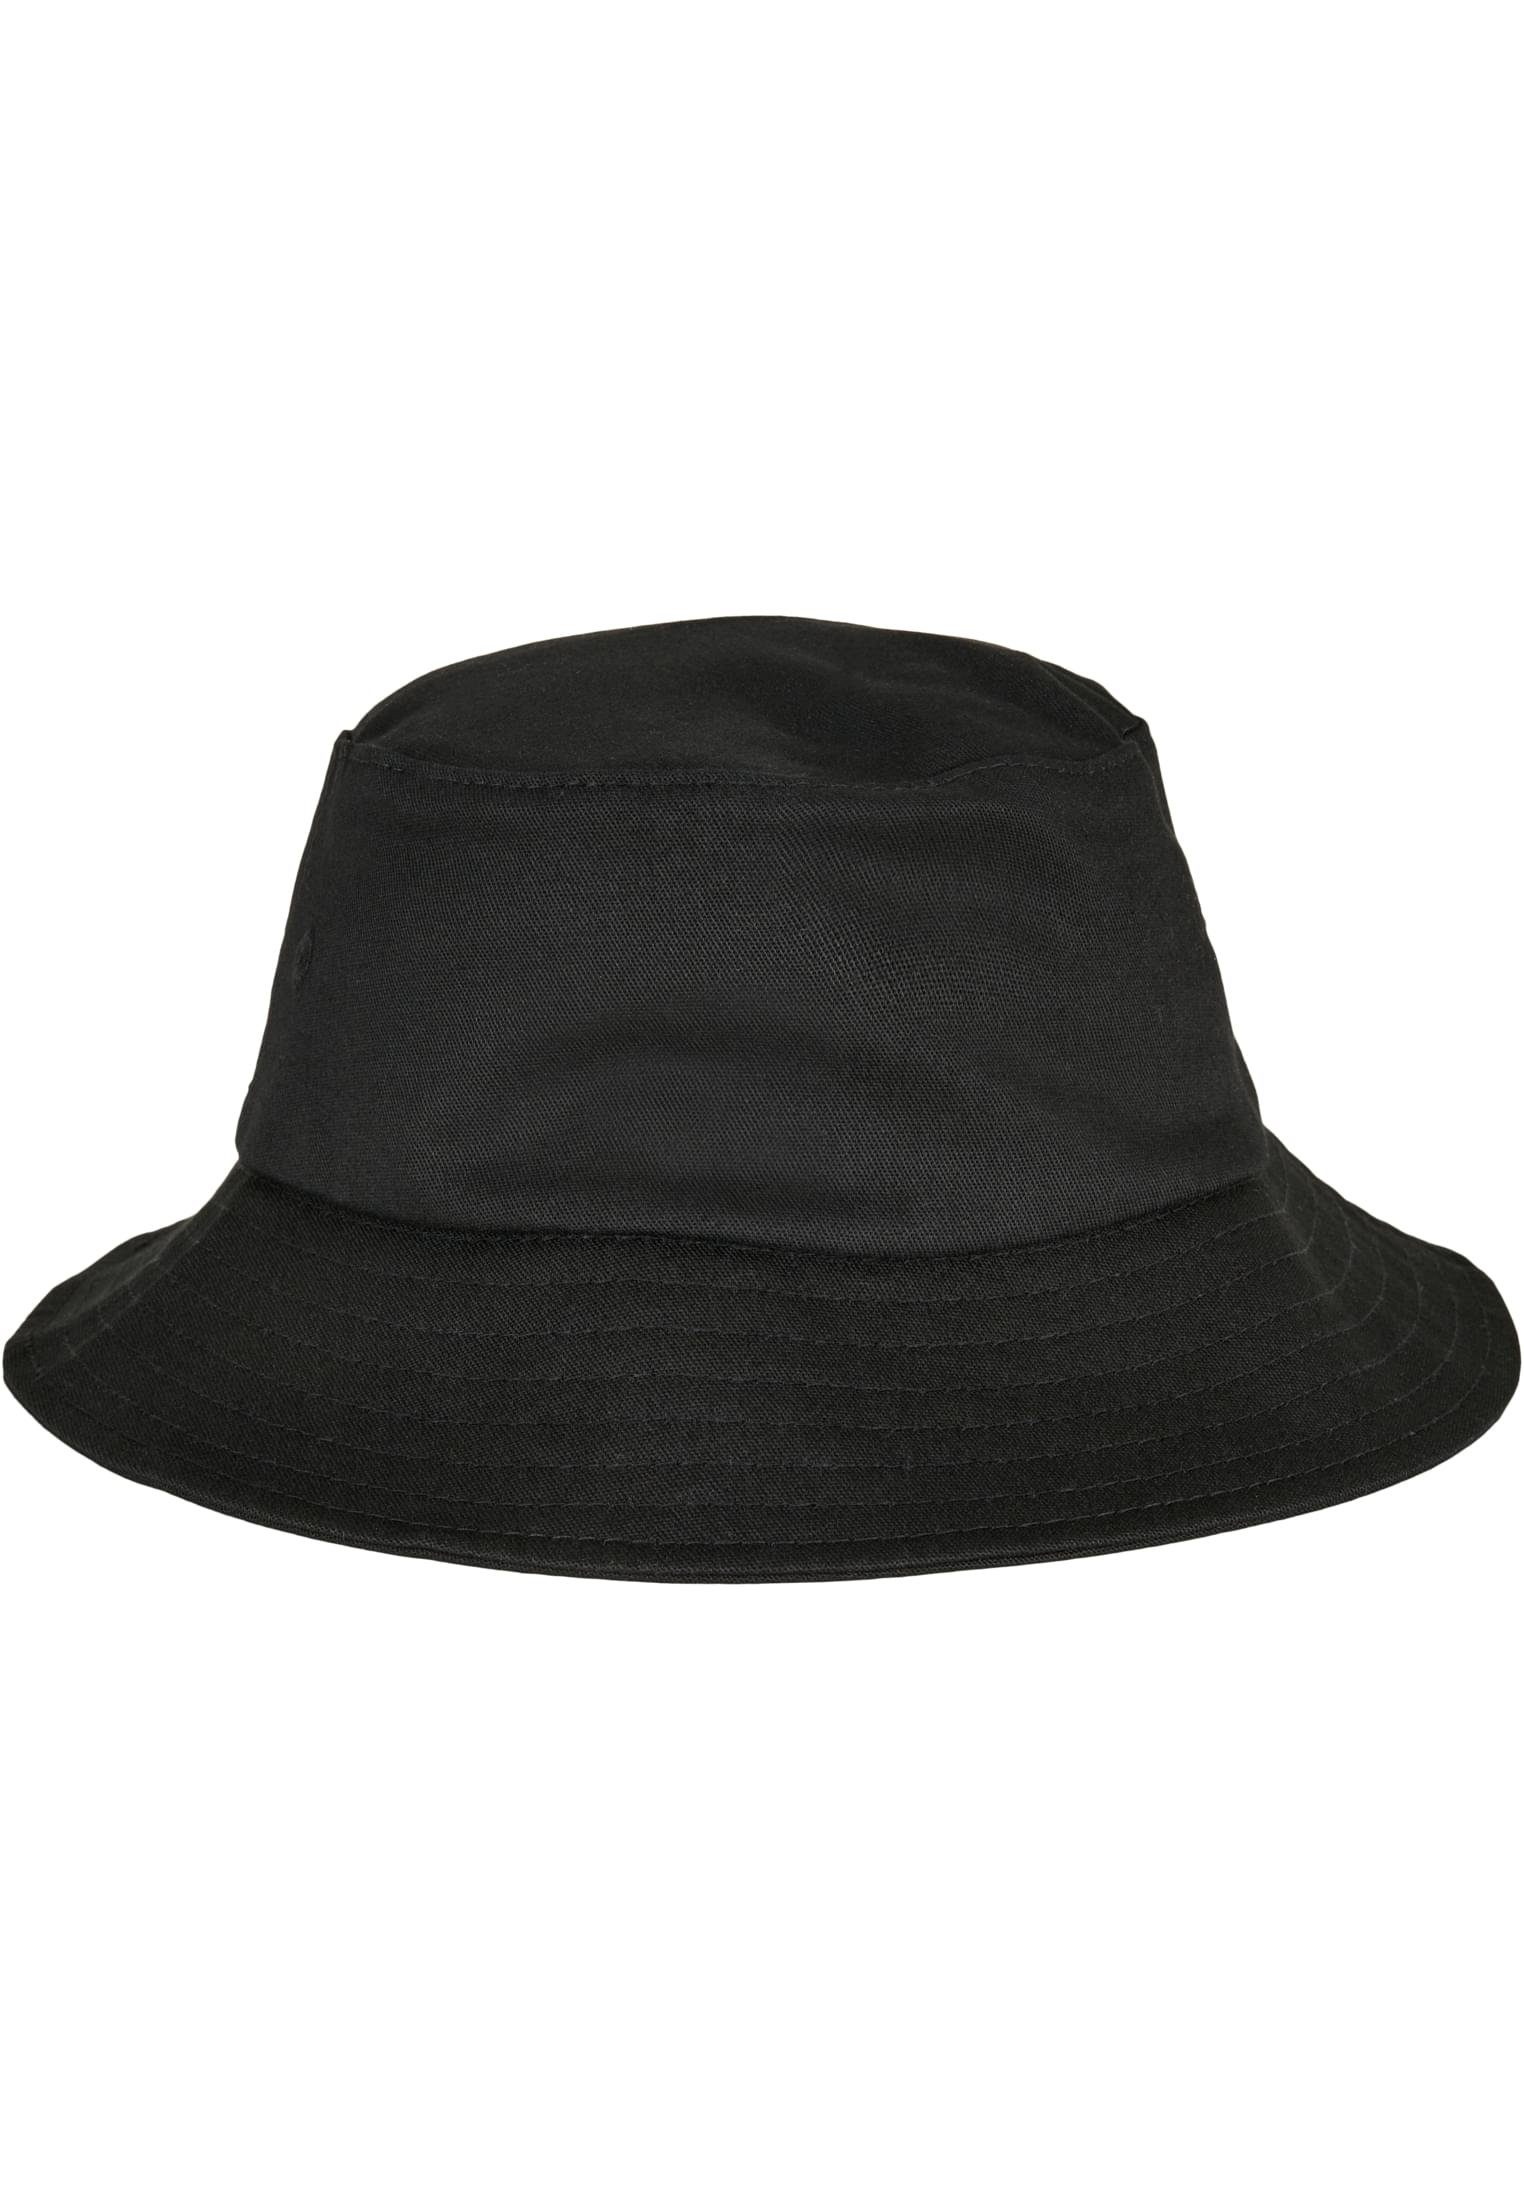 Flexfit Flexfit Hat black Cap Flex Bucket Twill Accessoires Kids Cotton